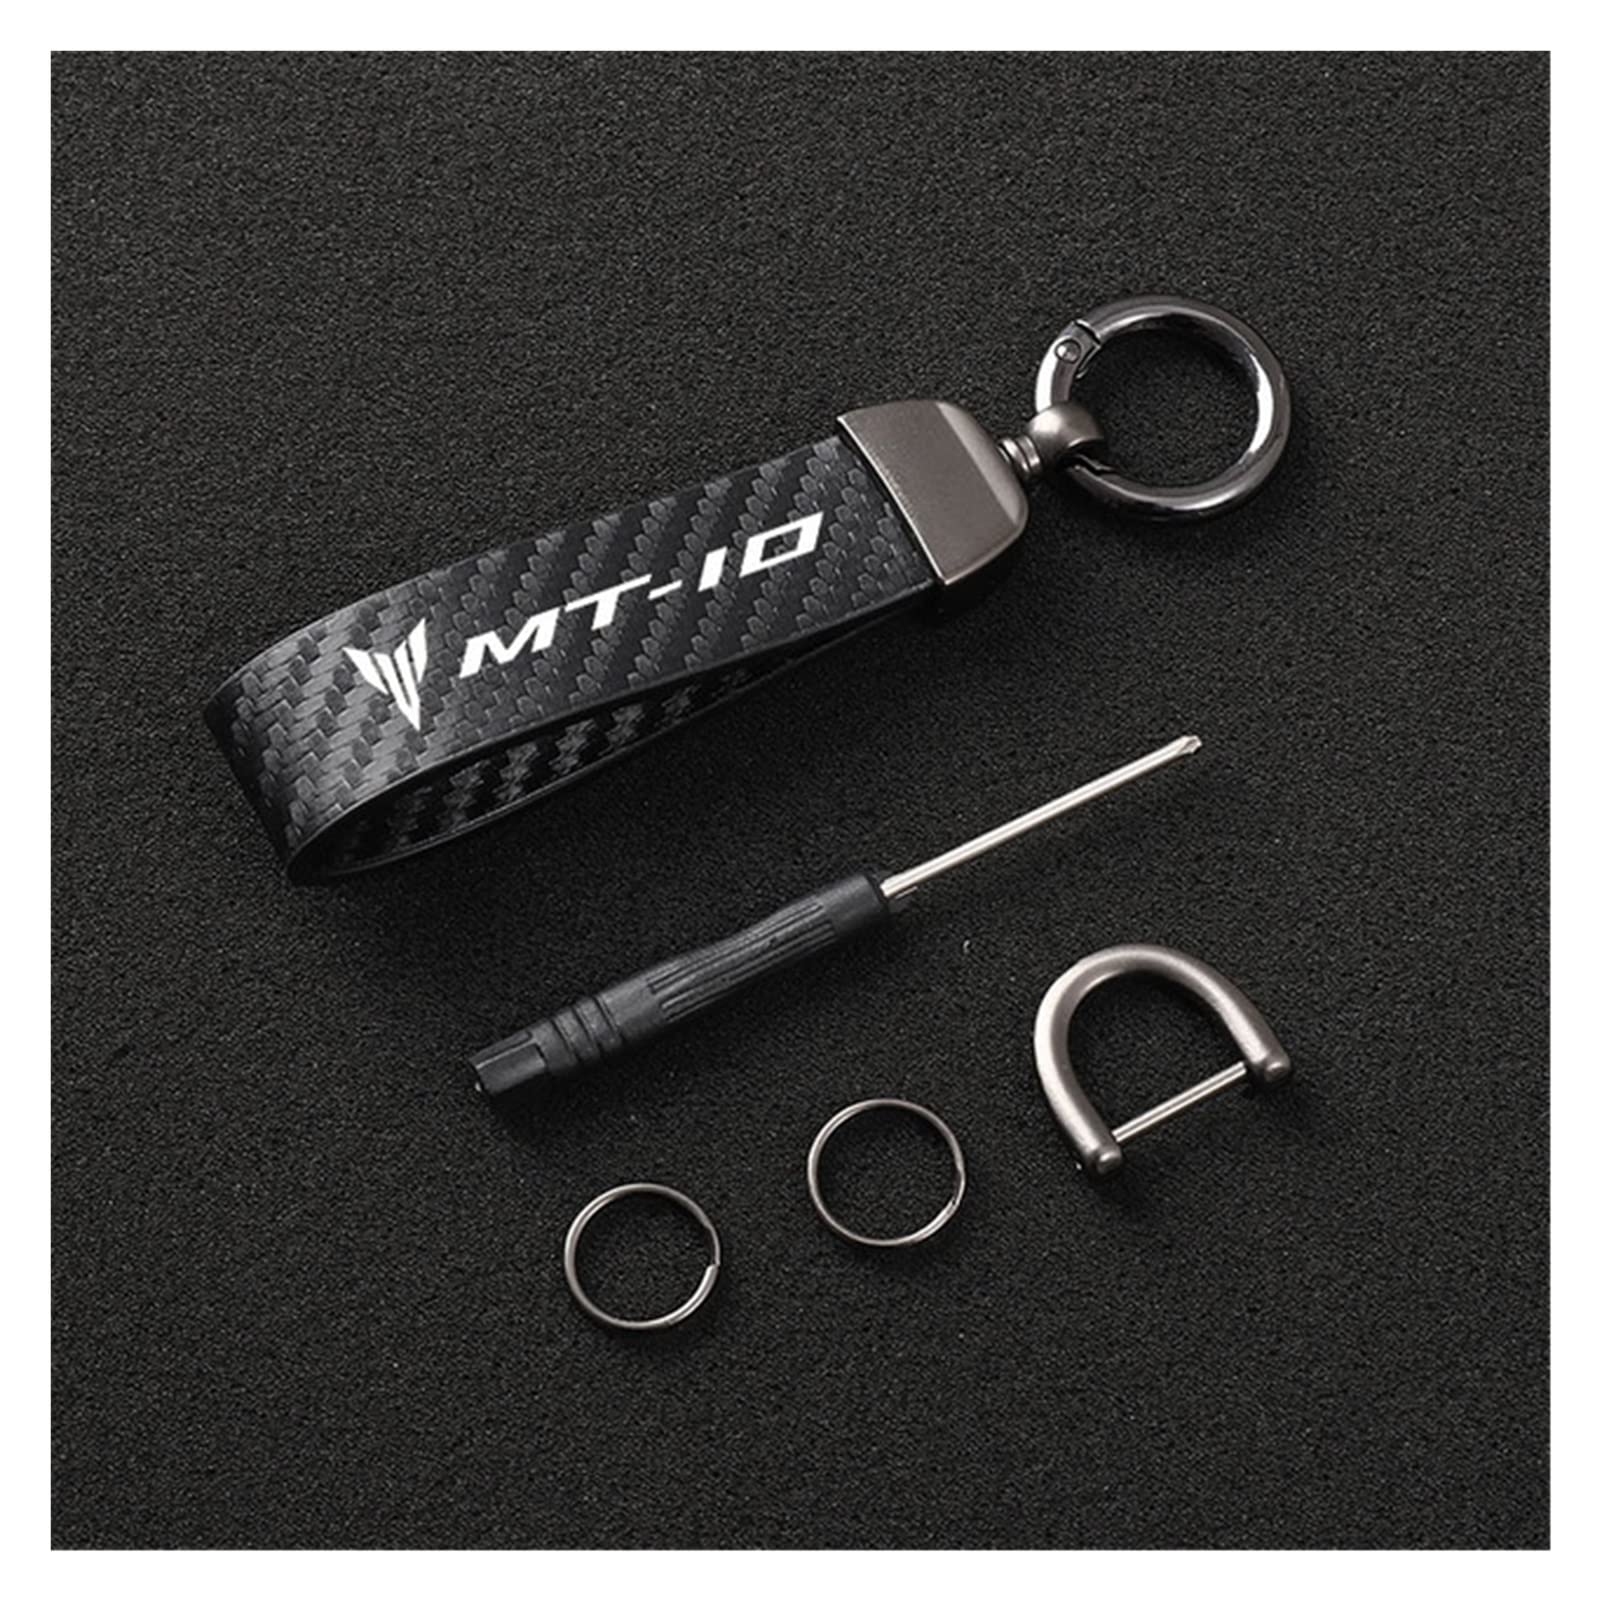 SXHM Motorrad Schlüsselanhänger Für Yamaha MT01 MT09 MT07 MT10 MT03 MT-09 MT-07 MT-10 MT-03 Tracer 900 700 GT Schlüsselband Schlüssel Kohlefaser (Farbe : MT-10, Size Normal) von SXHM